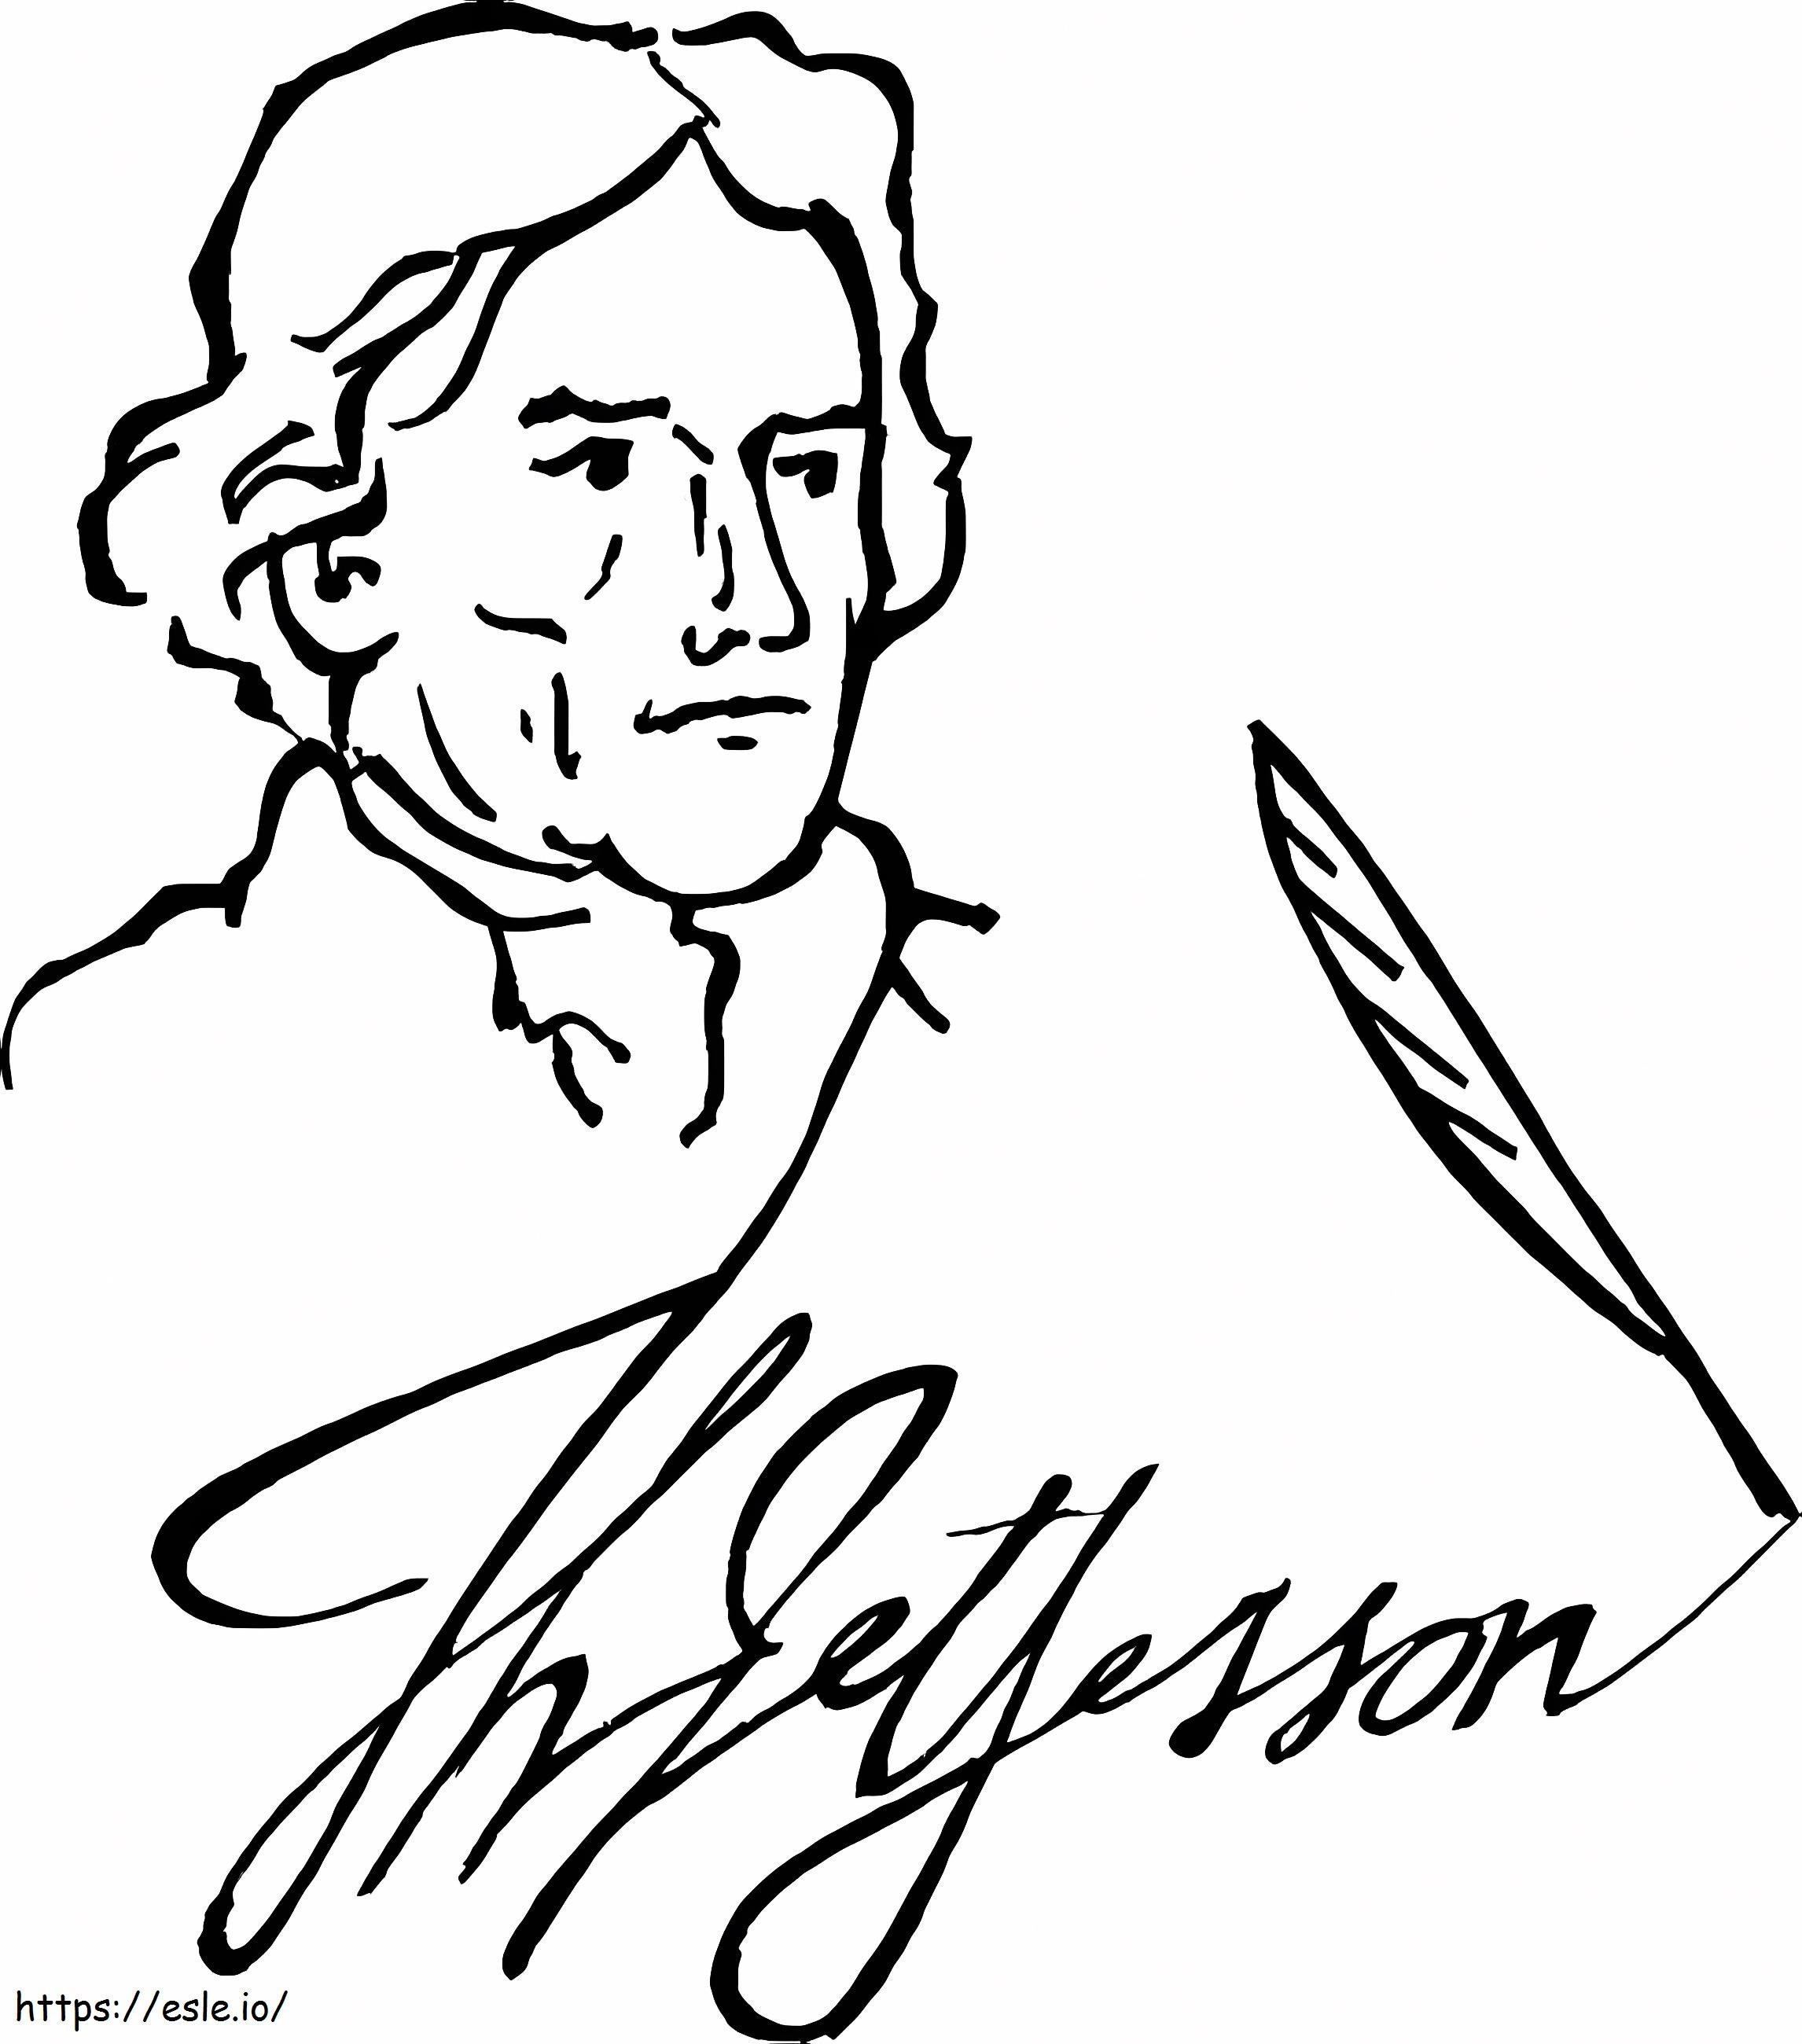 Bezpłatny wydruk Thomasa Jeffersona kolorowanka